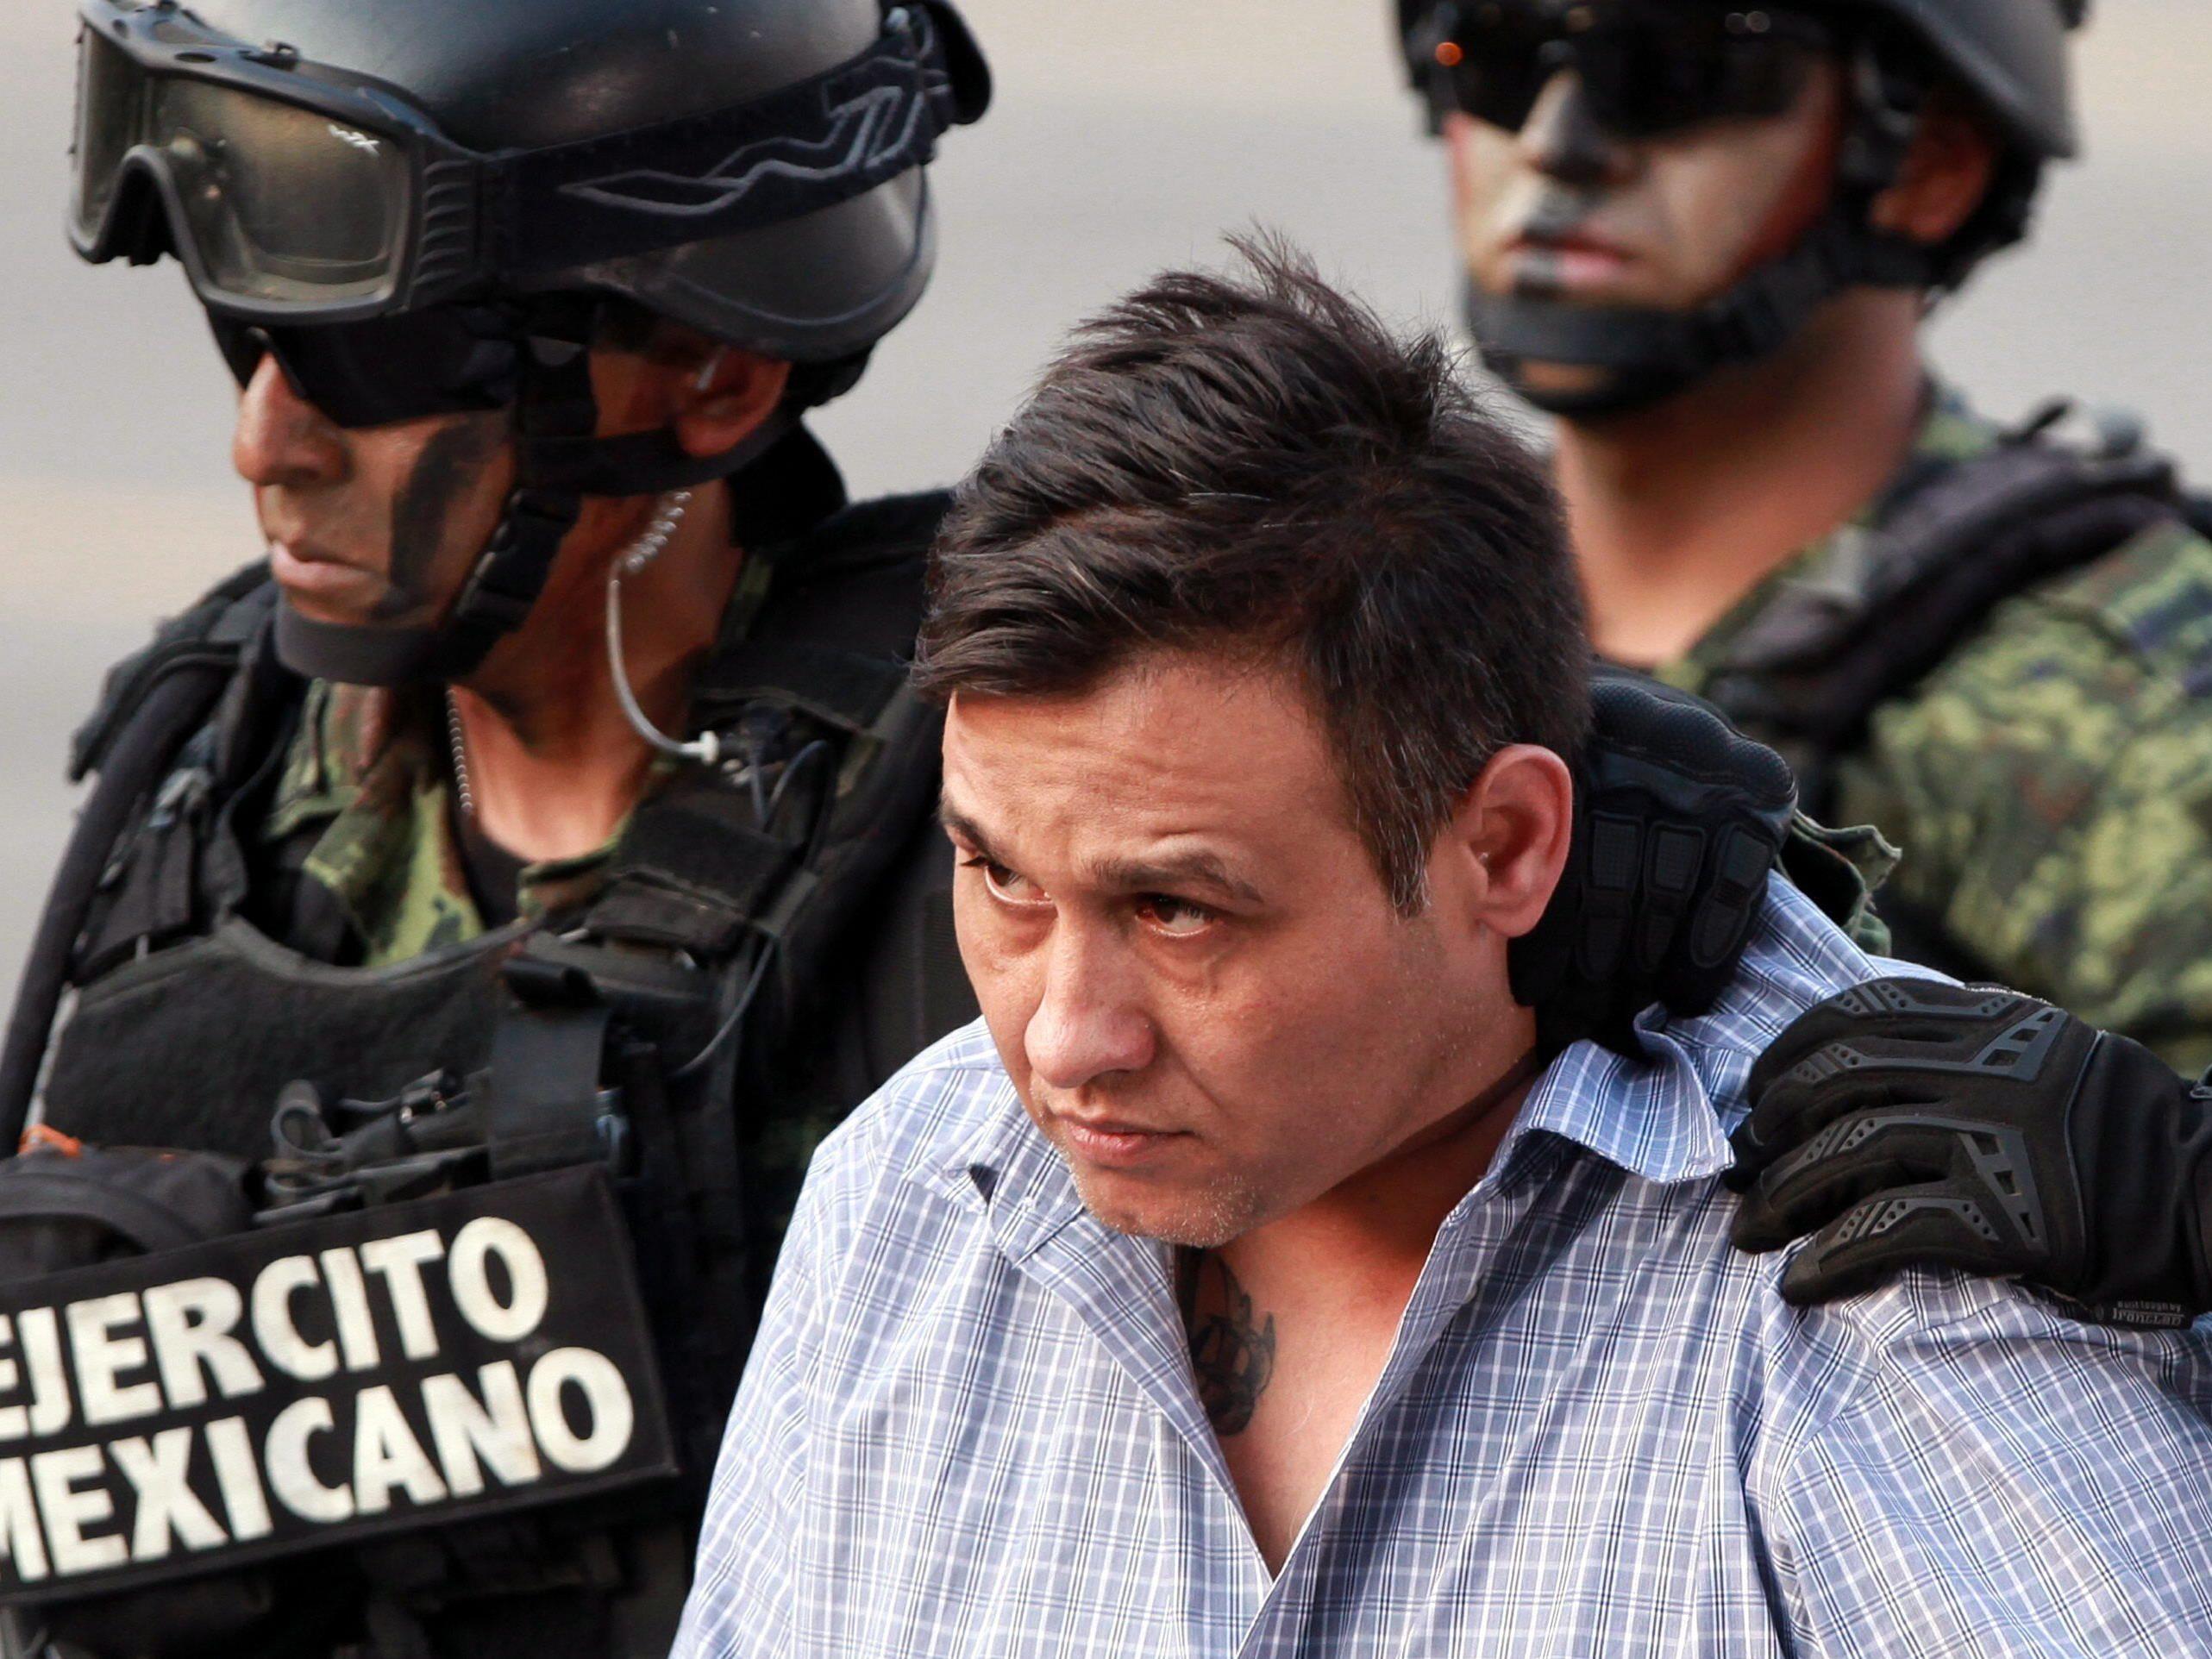 Anführer des mexikanischen Drogenkartells "Los Zetas" gefasst.